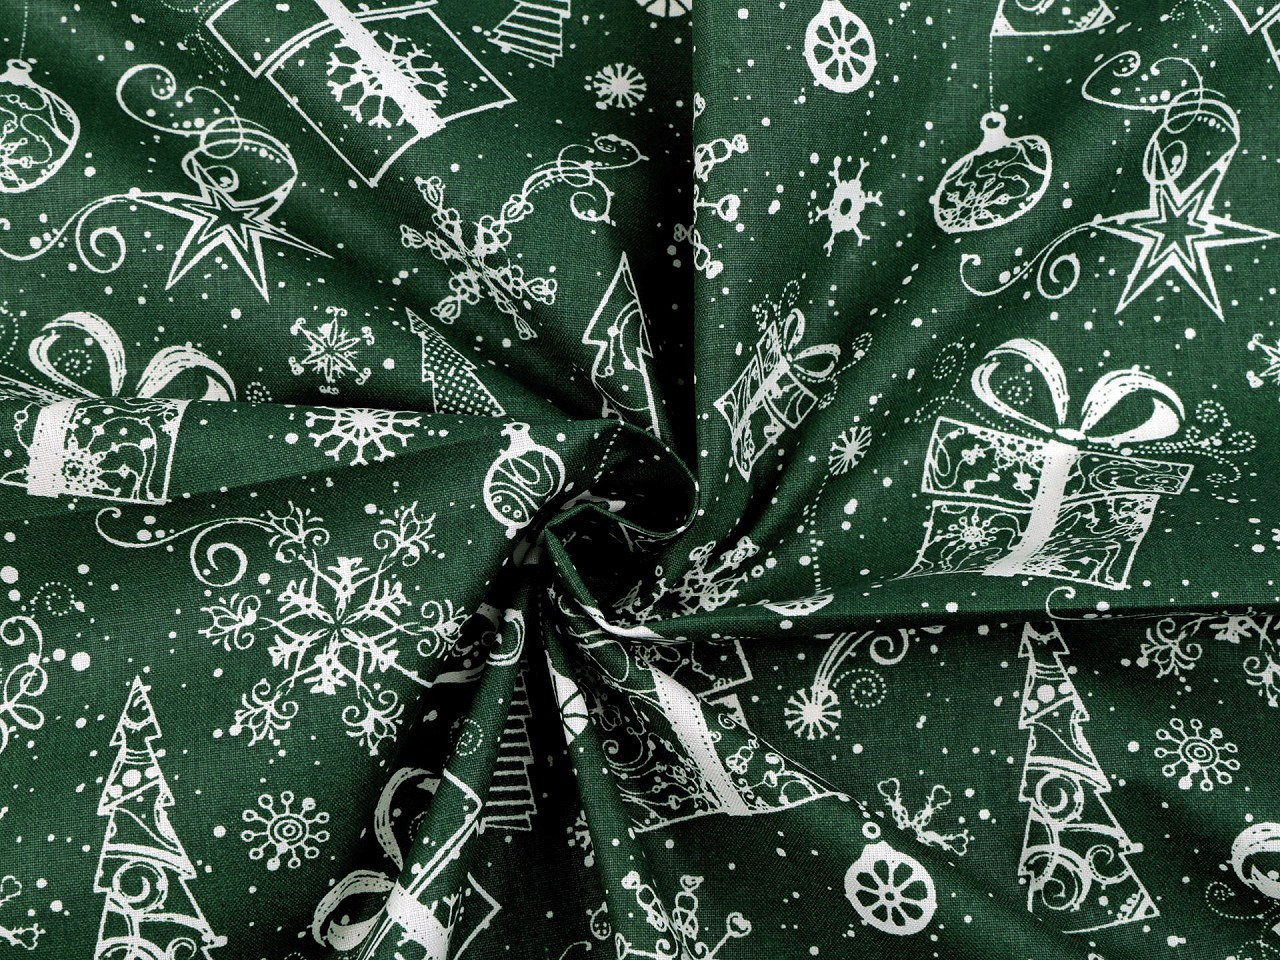 Vánoční bavlněná látka / plátno, barva 2 (CH4) zelená tmavá